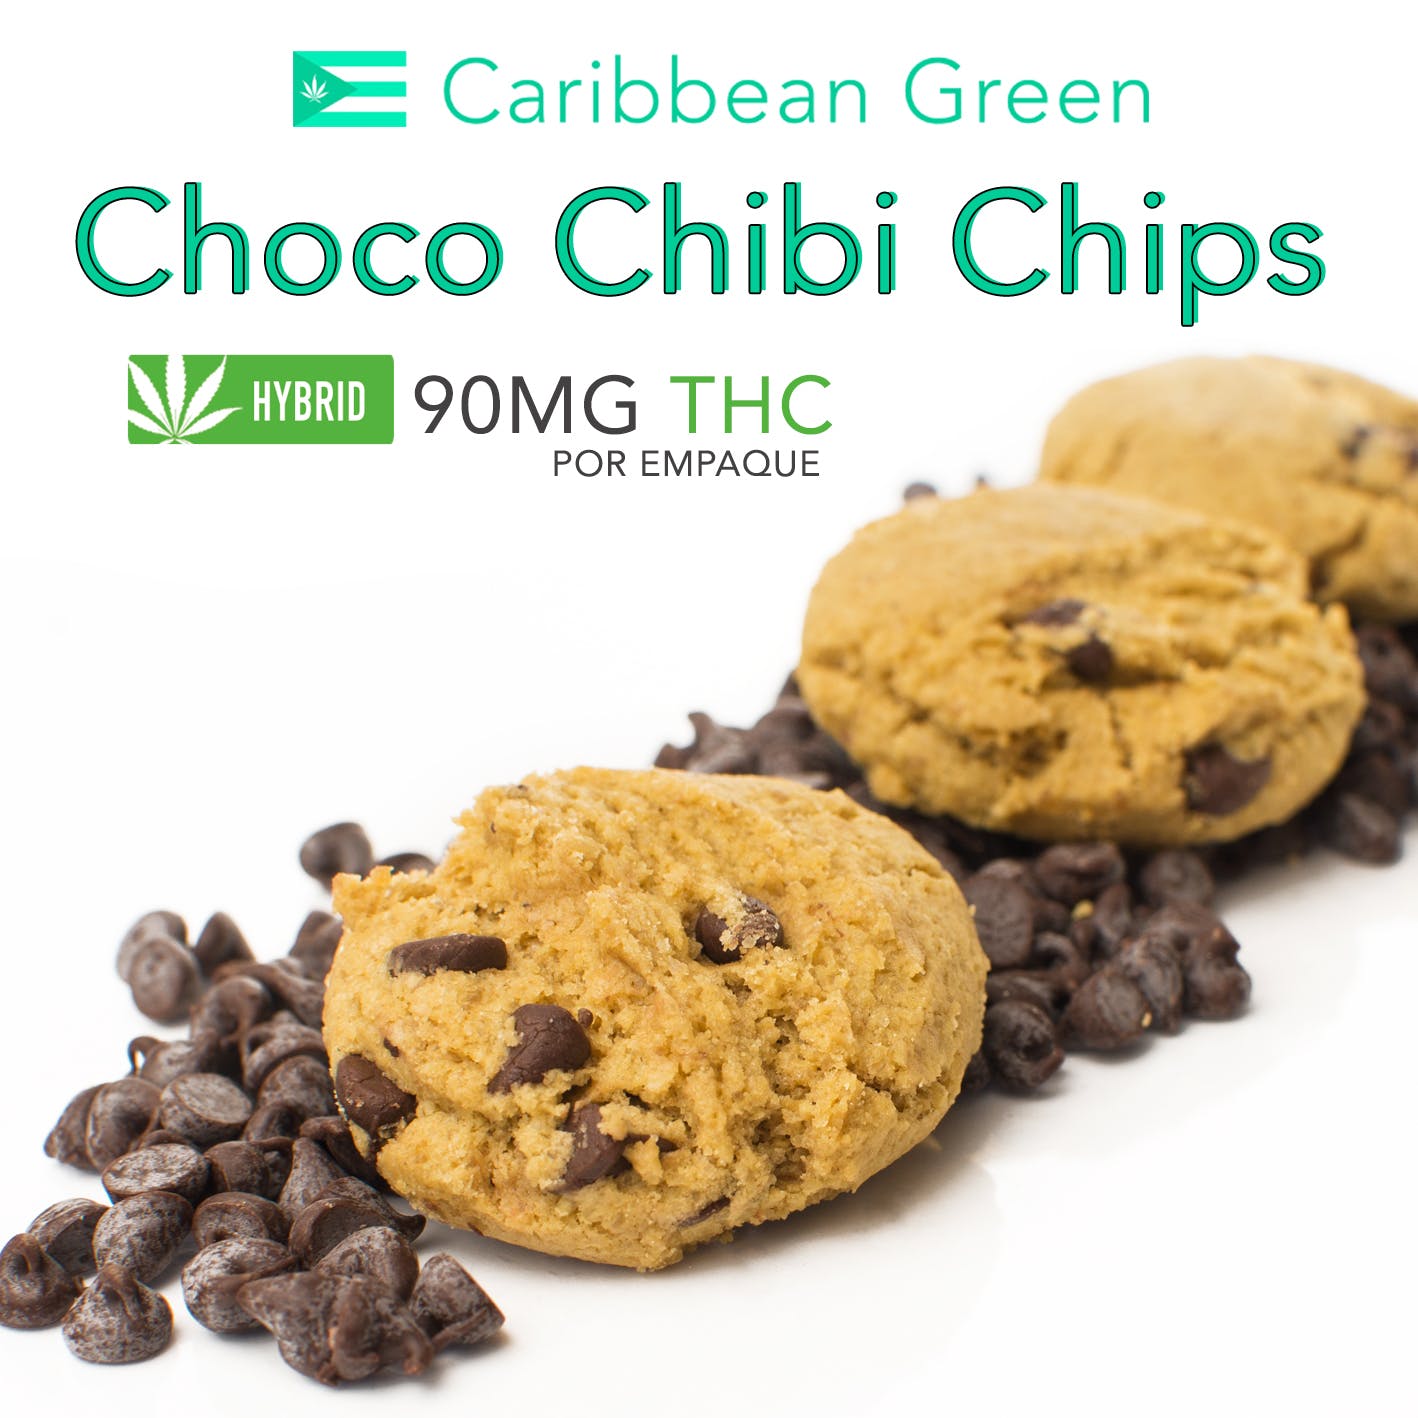 Choco Chibi Chips